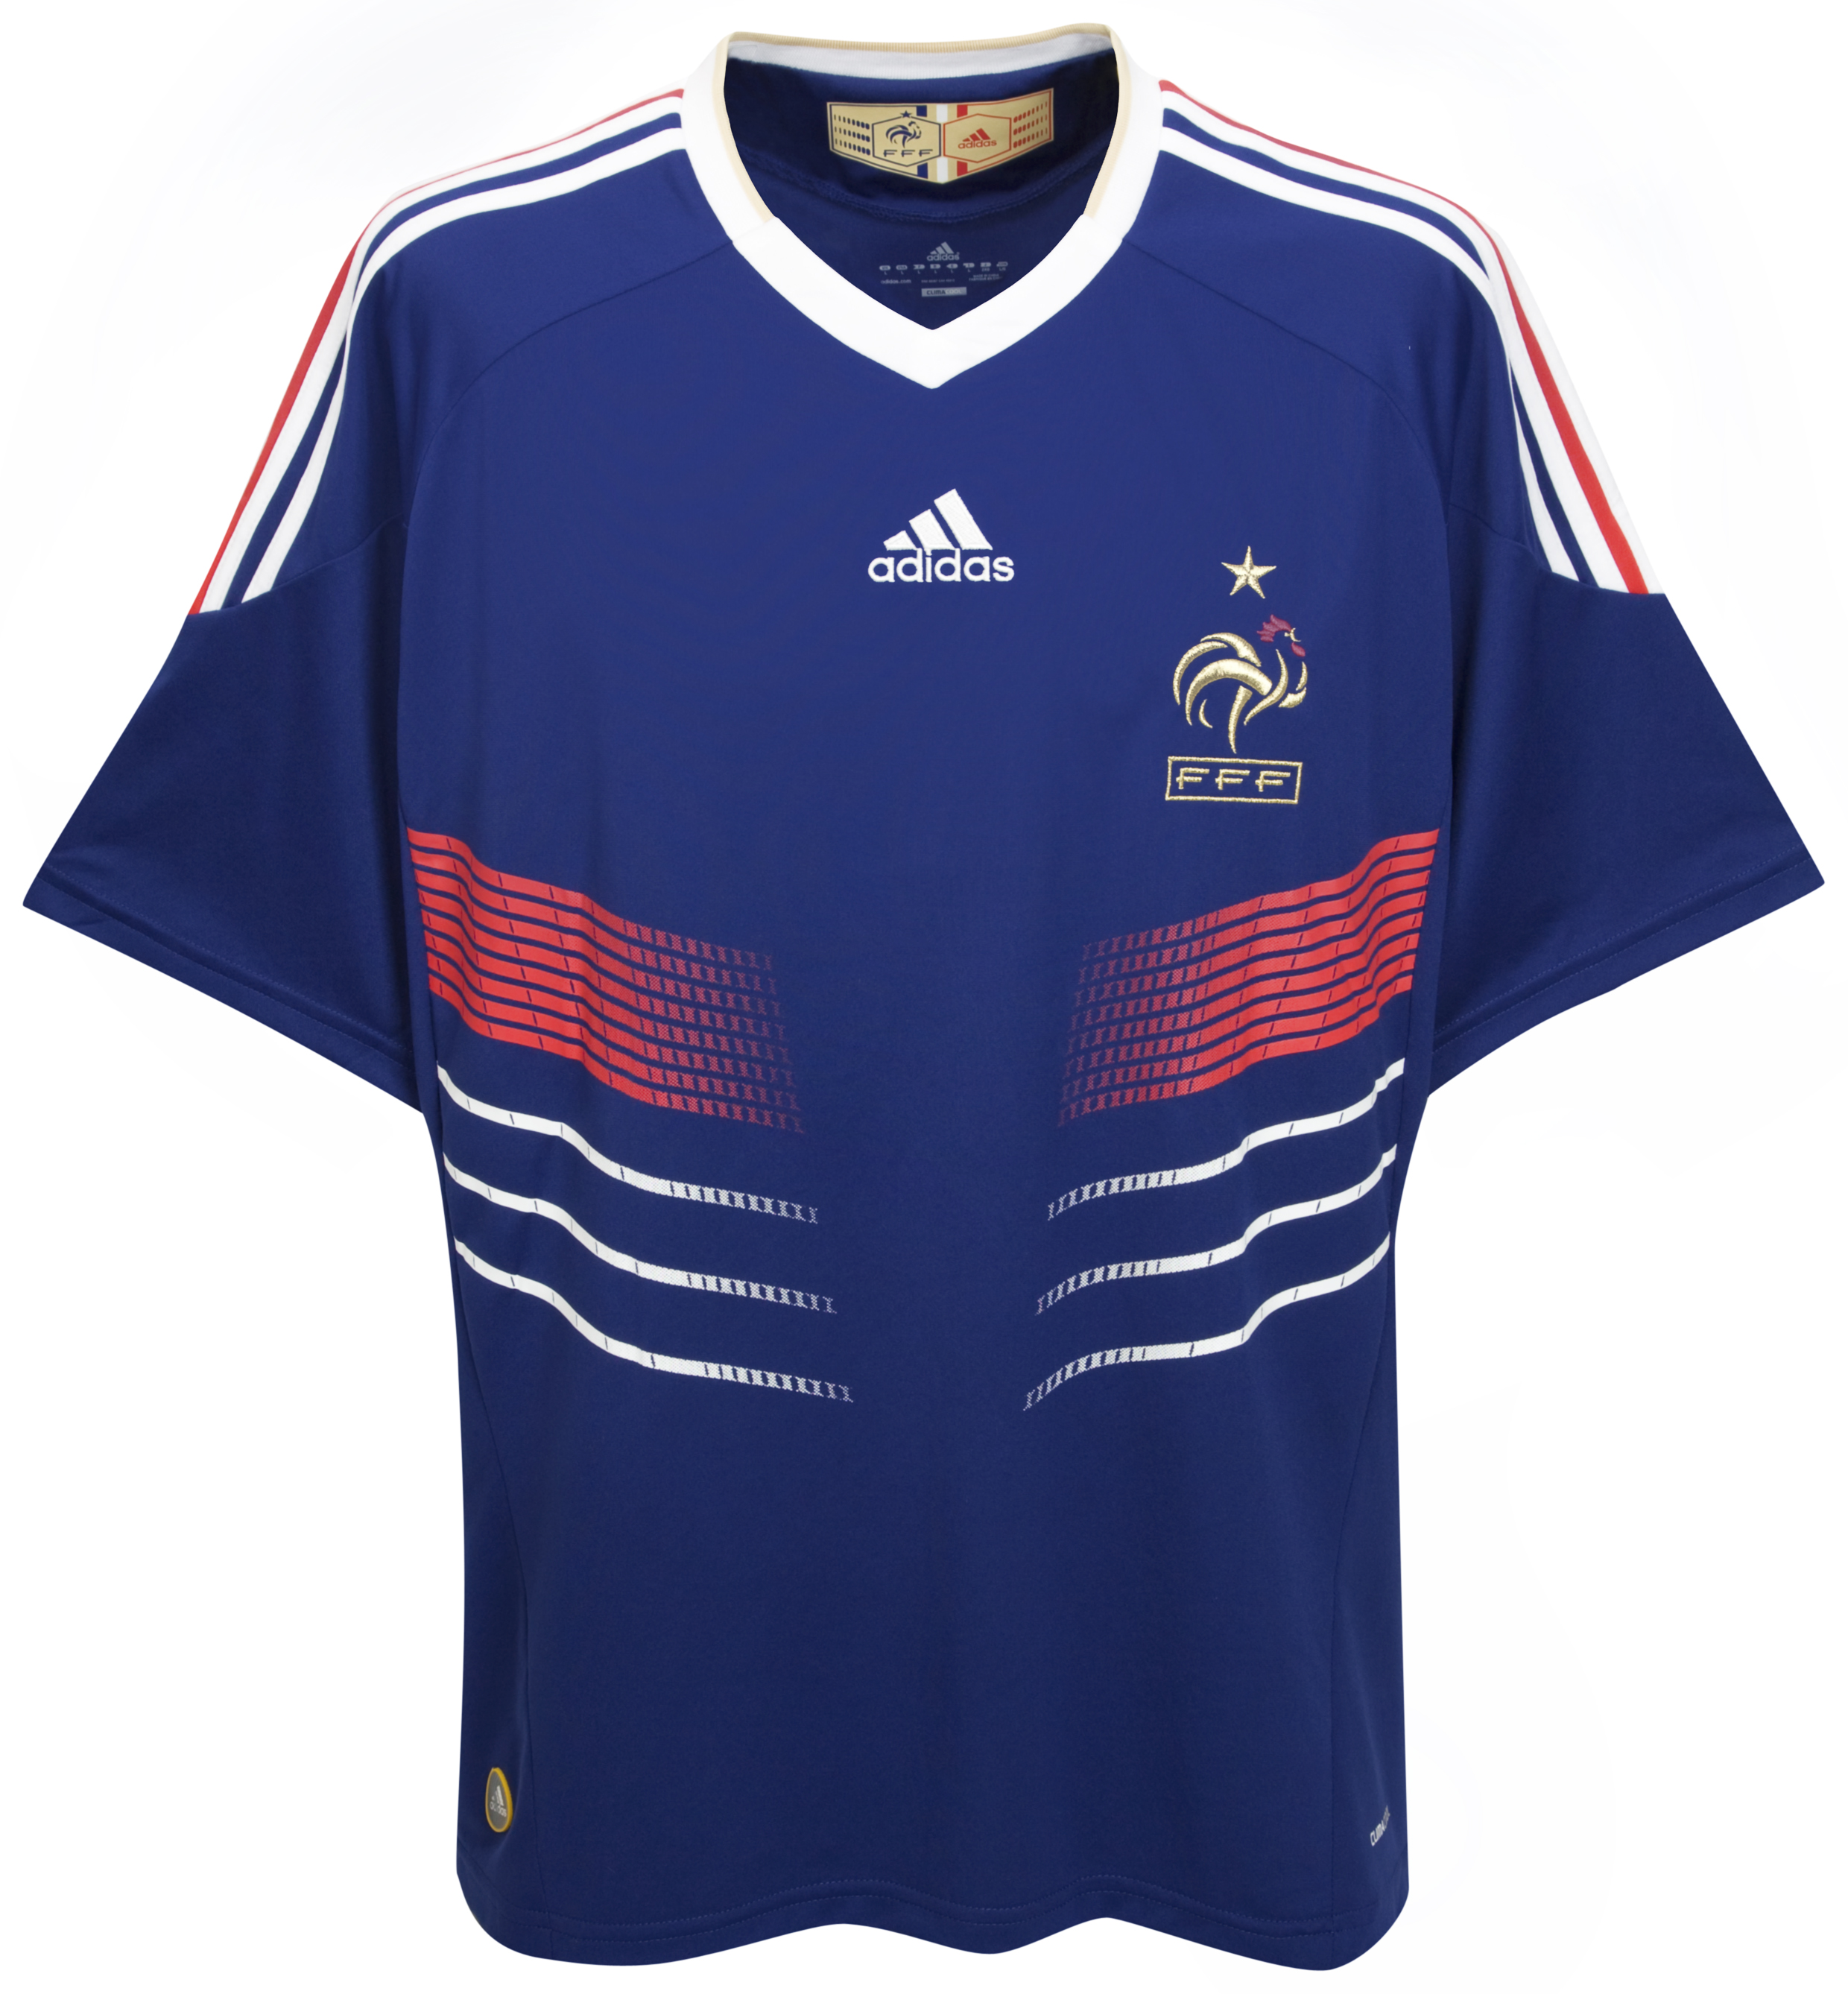 ملابس المنتخبات لكأس العالم ‎ 2010 Cfc-63740